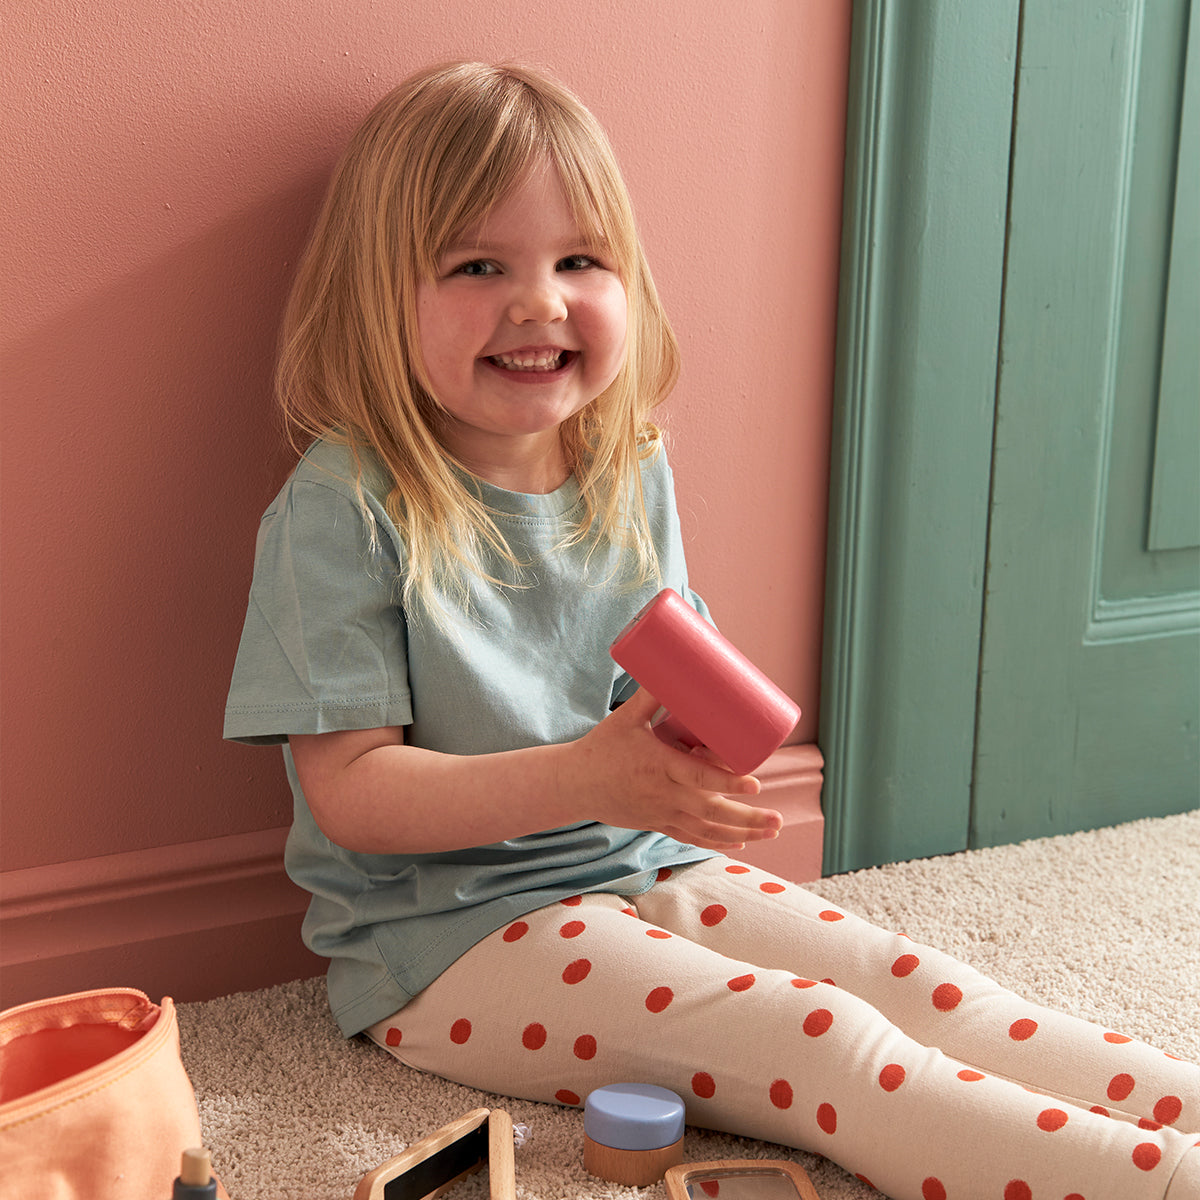 Met de Kid’s Concept kappersset kan jouw kindje net als mama of papa lekker de haartjes stylen. Deze leuke set bestaat uit een toilettasje vol met houten apparaten en accessoires voor je haar. VanZus.